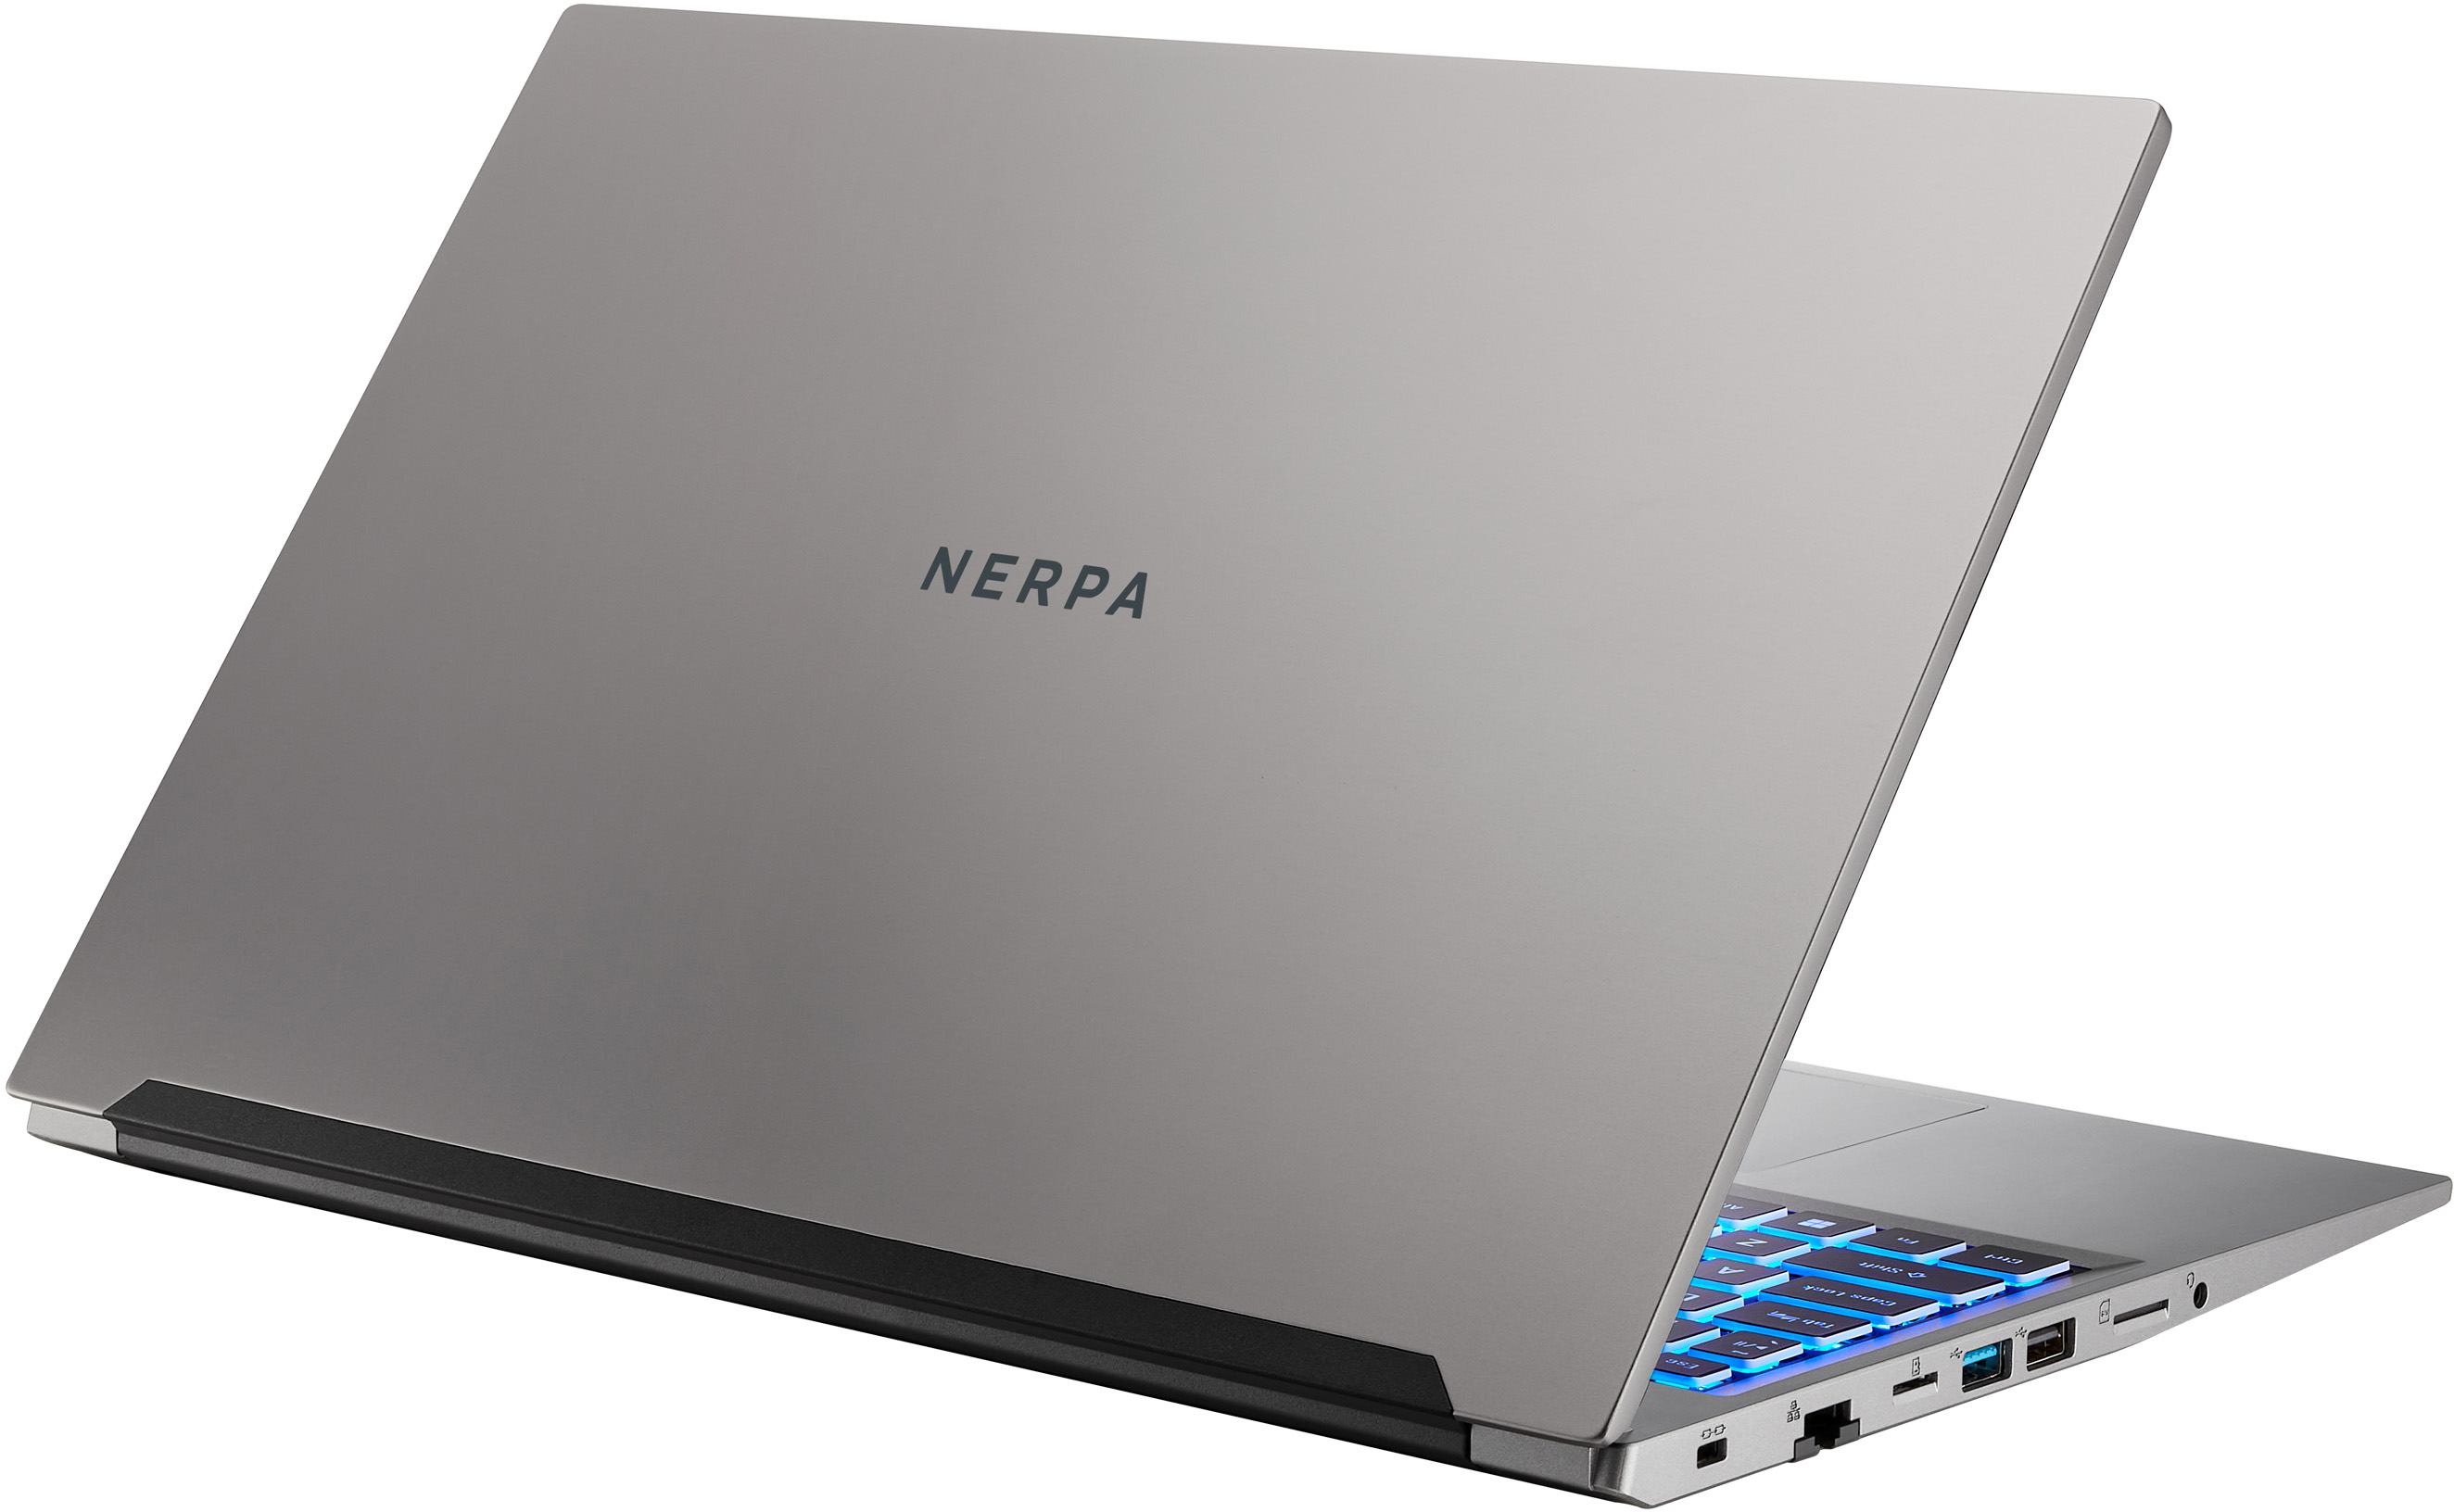 Нерпа ноутбуки. A752-15ac082600g. NERPA caspica a752-15 15.6". Ноутбук Нерпа. NERPA caspica a352-15 Black (AMD Ryzen 3 5300u/8gb/256gb SSD/NODVD/VGA INT/Noos).